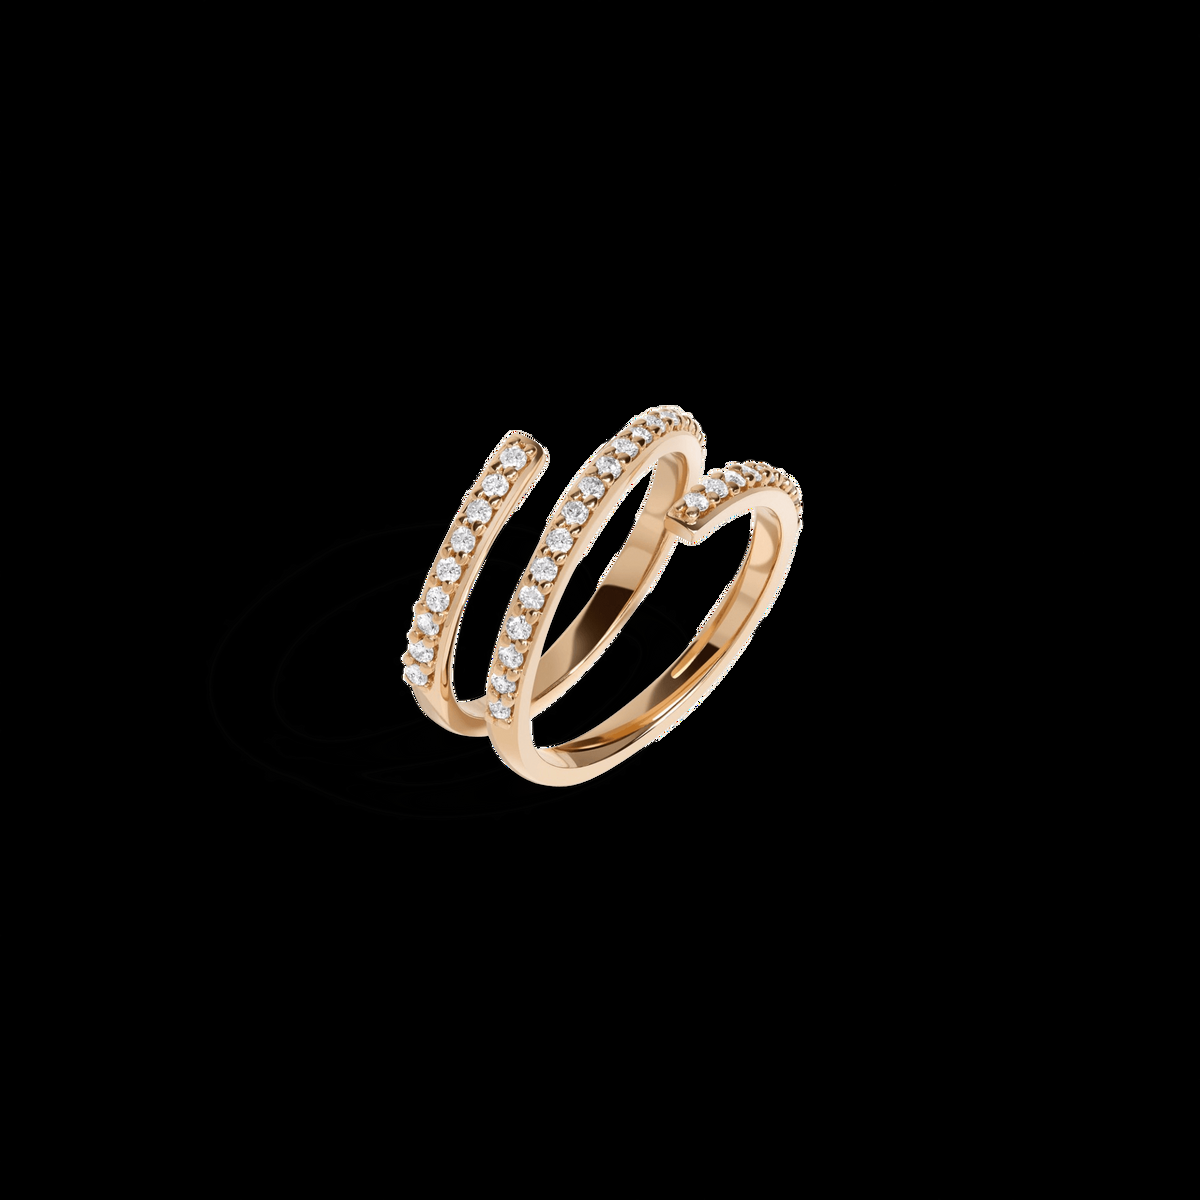 Wraparound Ring with White Diamonds